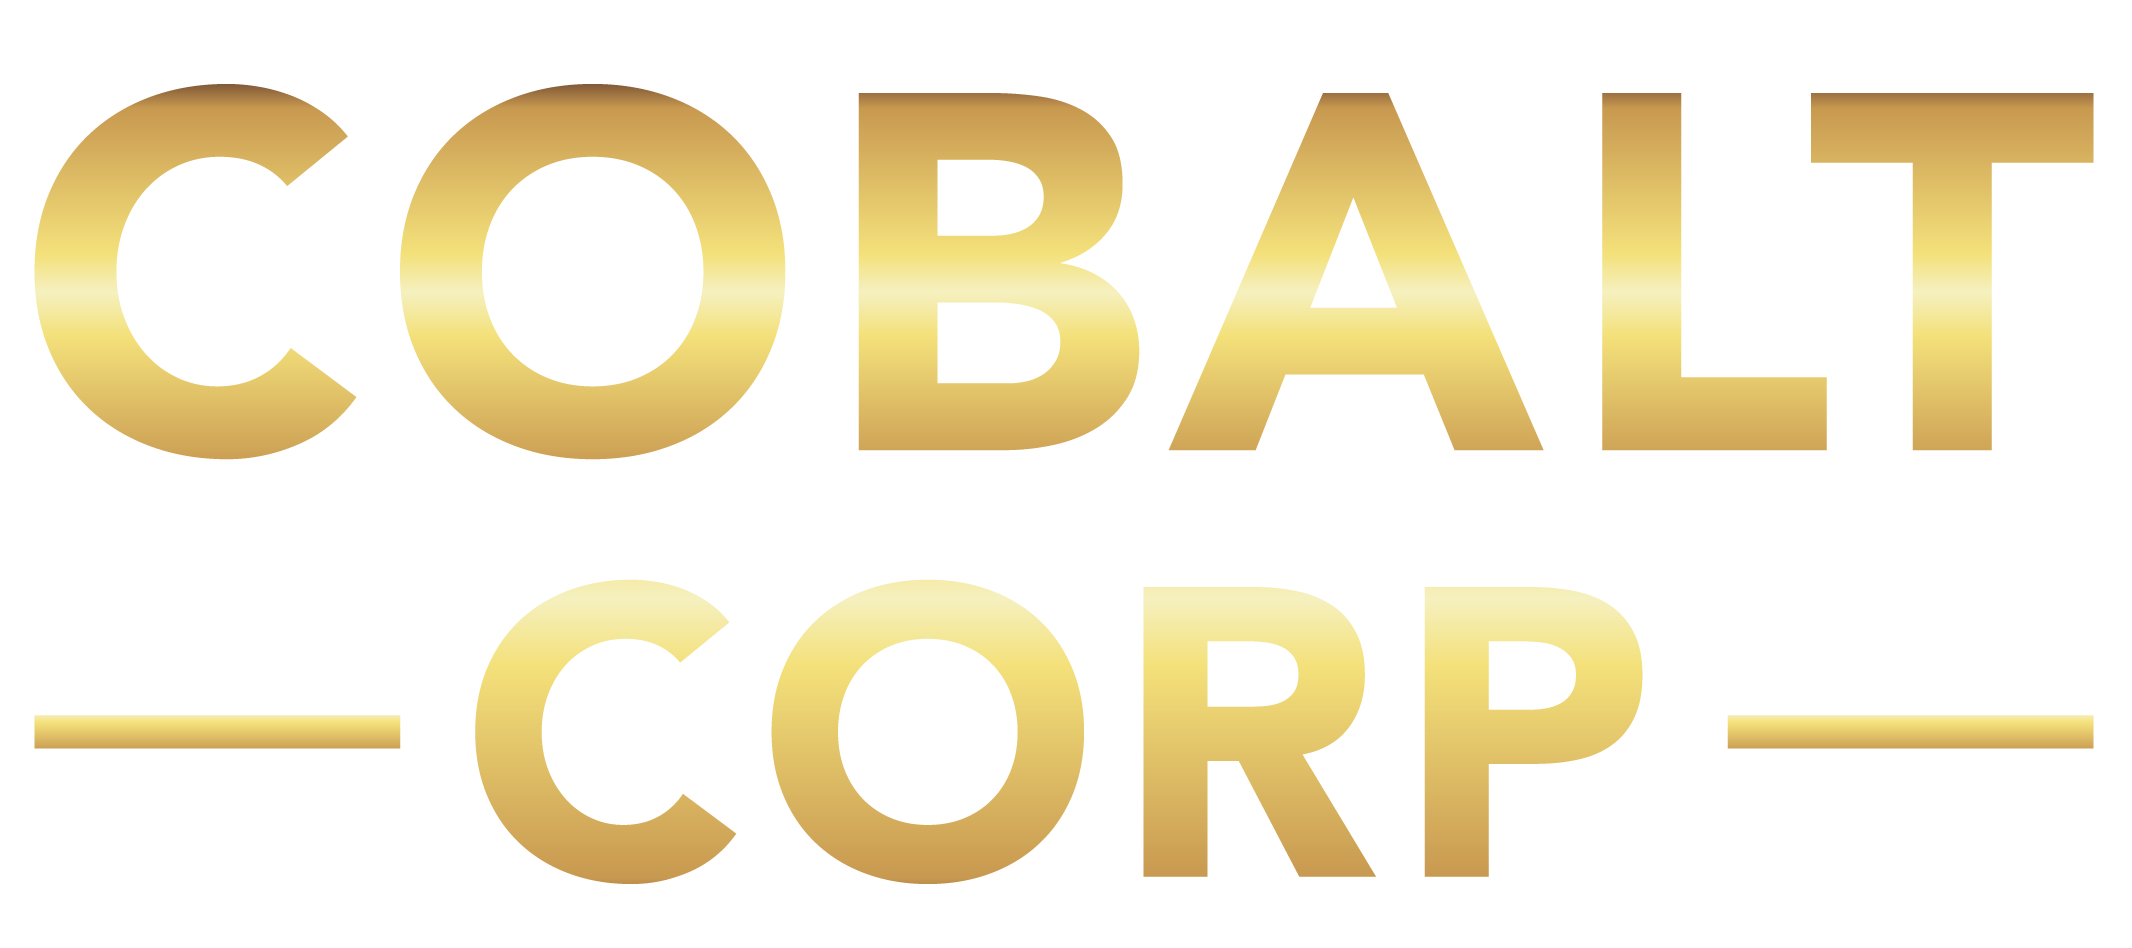 Cobalt Corp